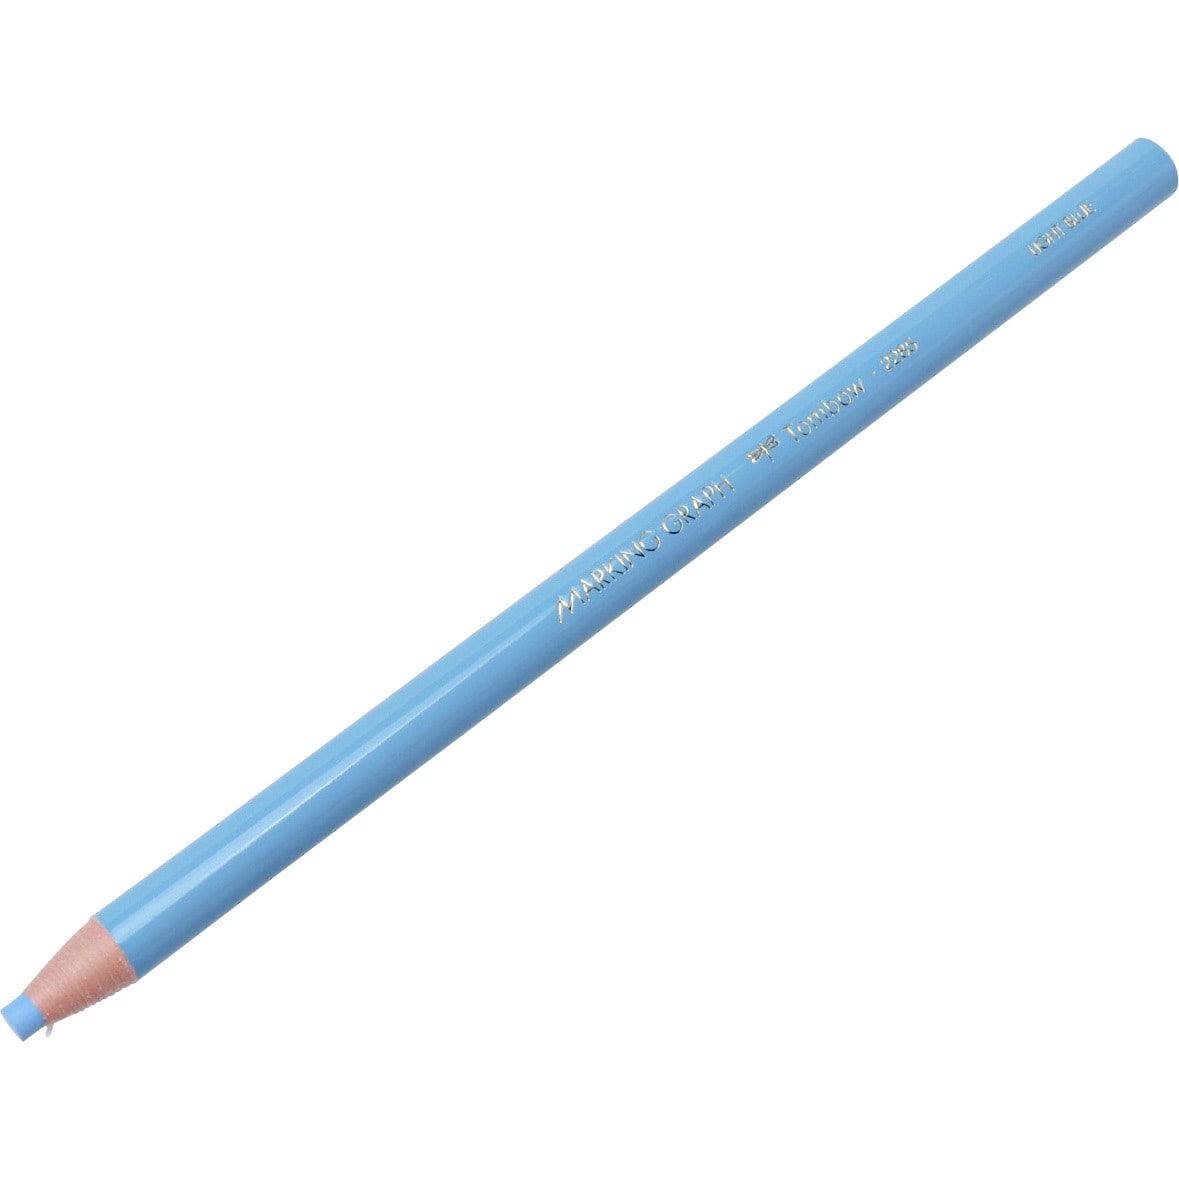 トンボ鉛筆 色鉛筆 紙巻き マーキンググラフ 水色 1ダース 2285-13